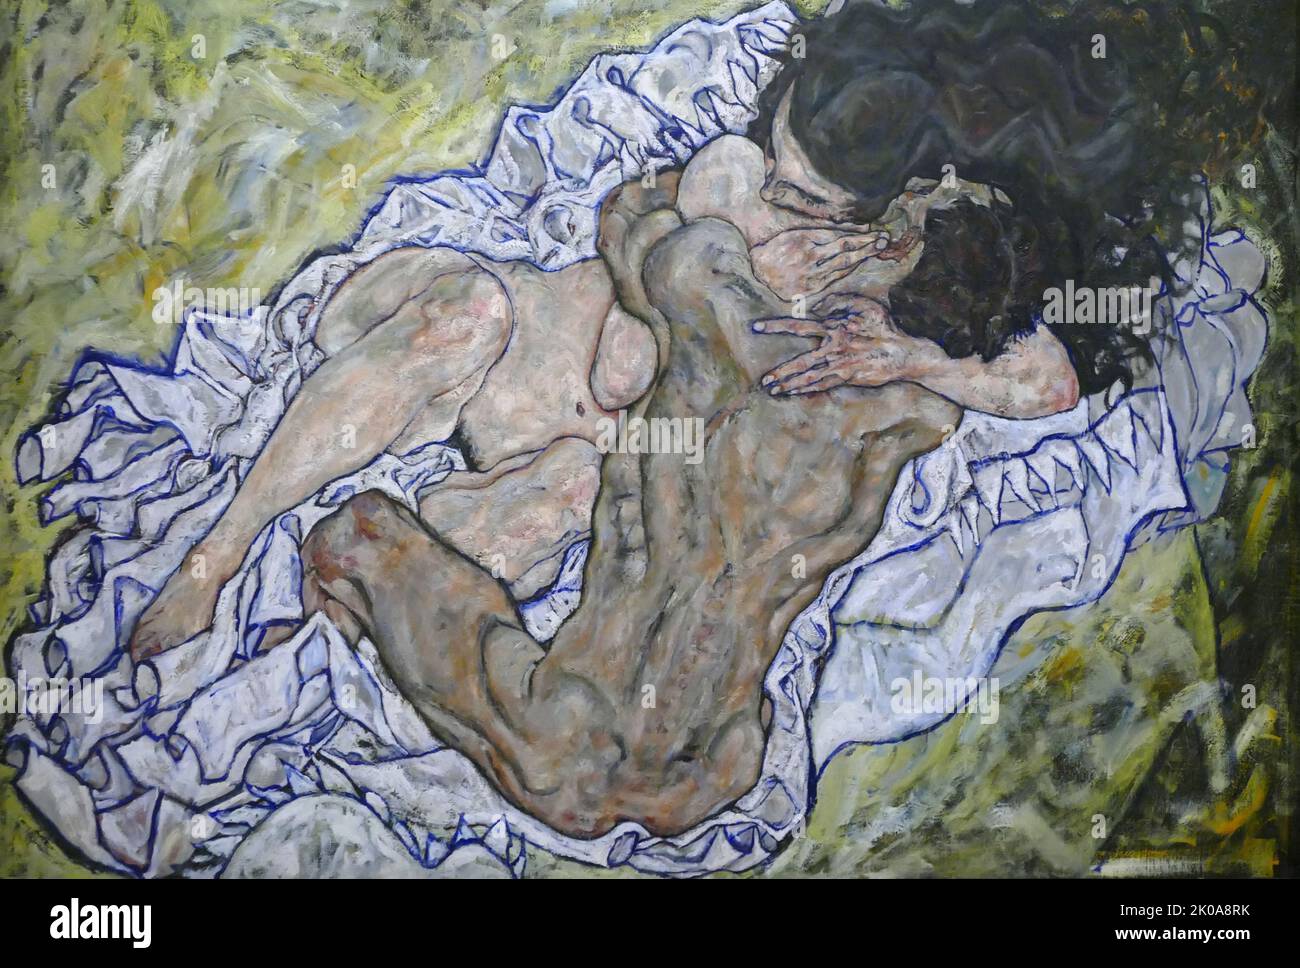 The Embrace, 1917. Huile sur toile par Egon Schiele. Egon Leo Adolf Ludwig Schiele (12 juin 1890 - 31 octobre 1918) est un peintre expressionniste autrichien. Protesté de Gustav Klimt, Schiele était un peintre figuratif majeur du début du 20th siècle. Banque D'Images